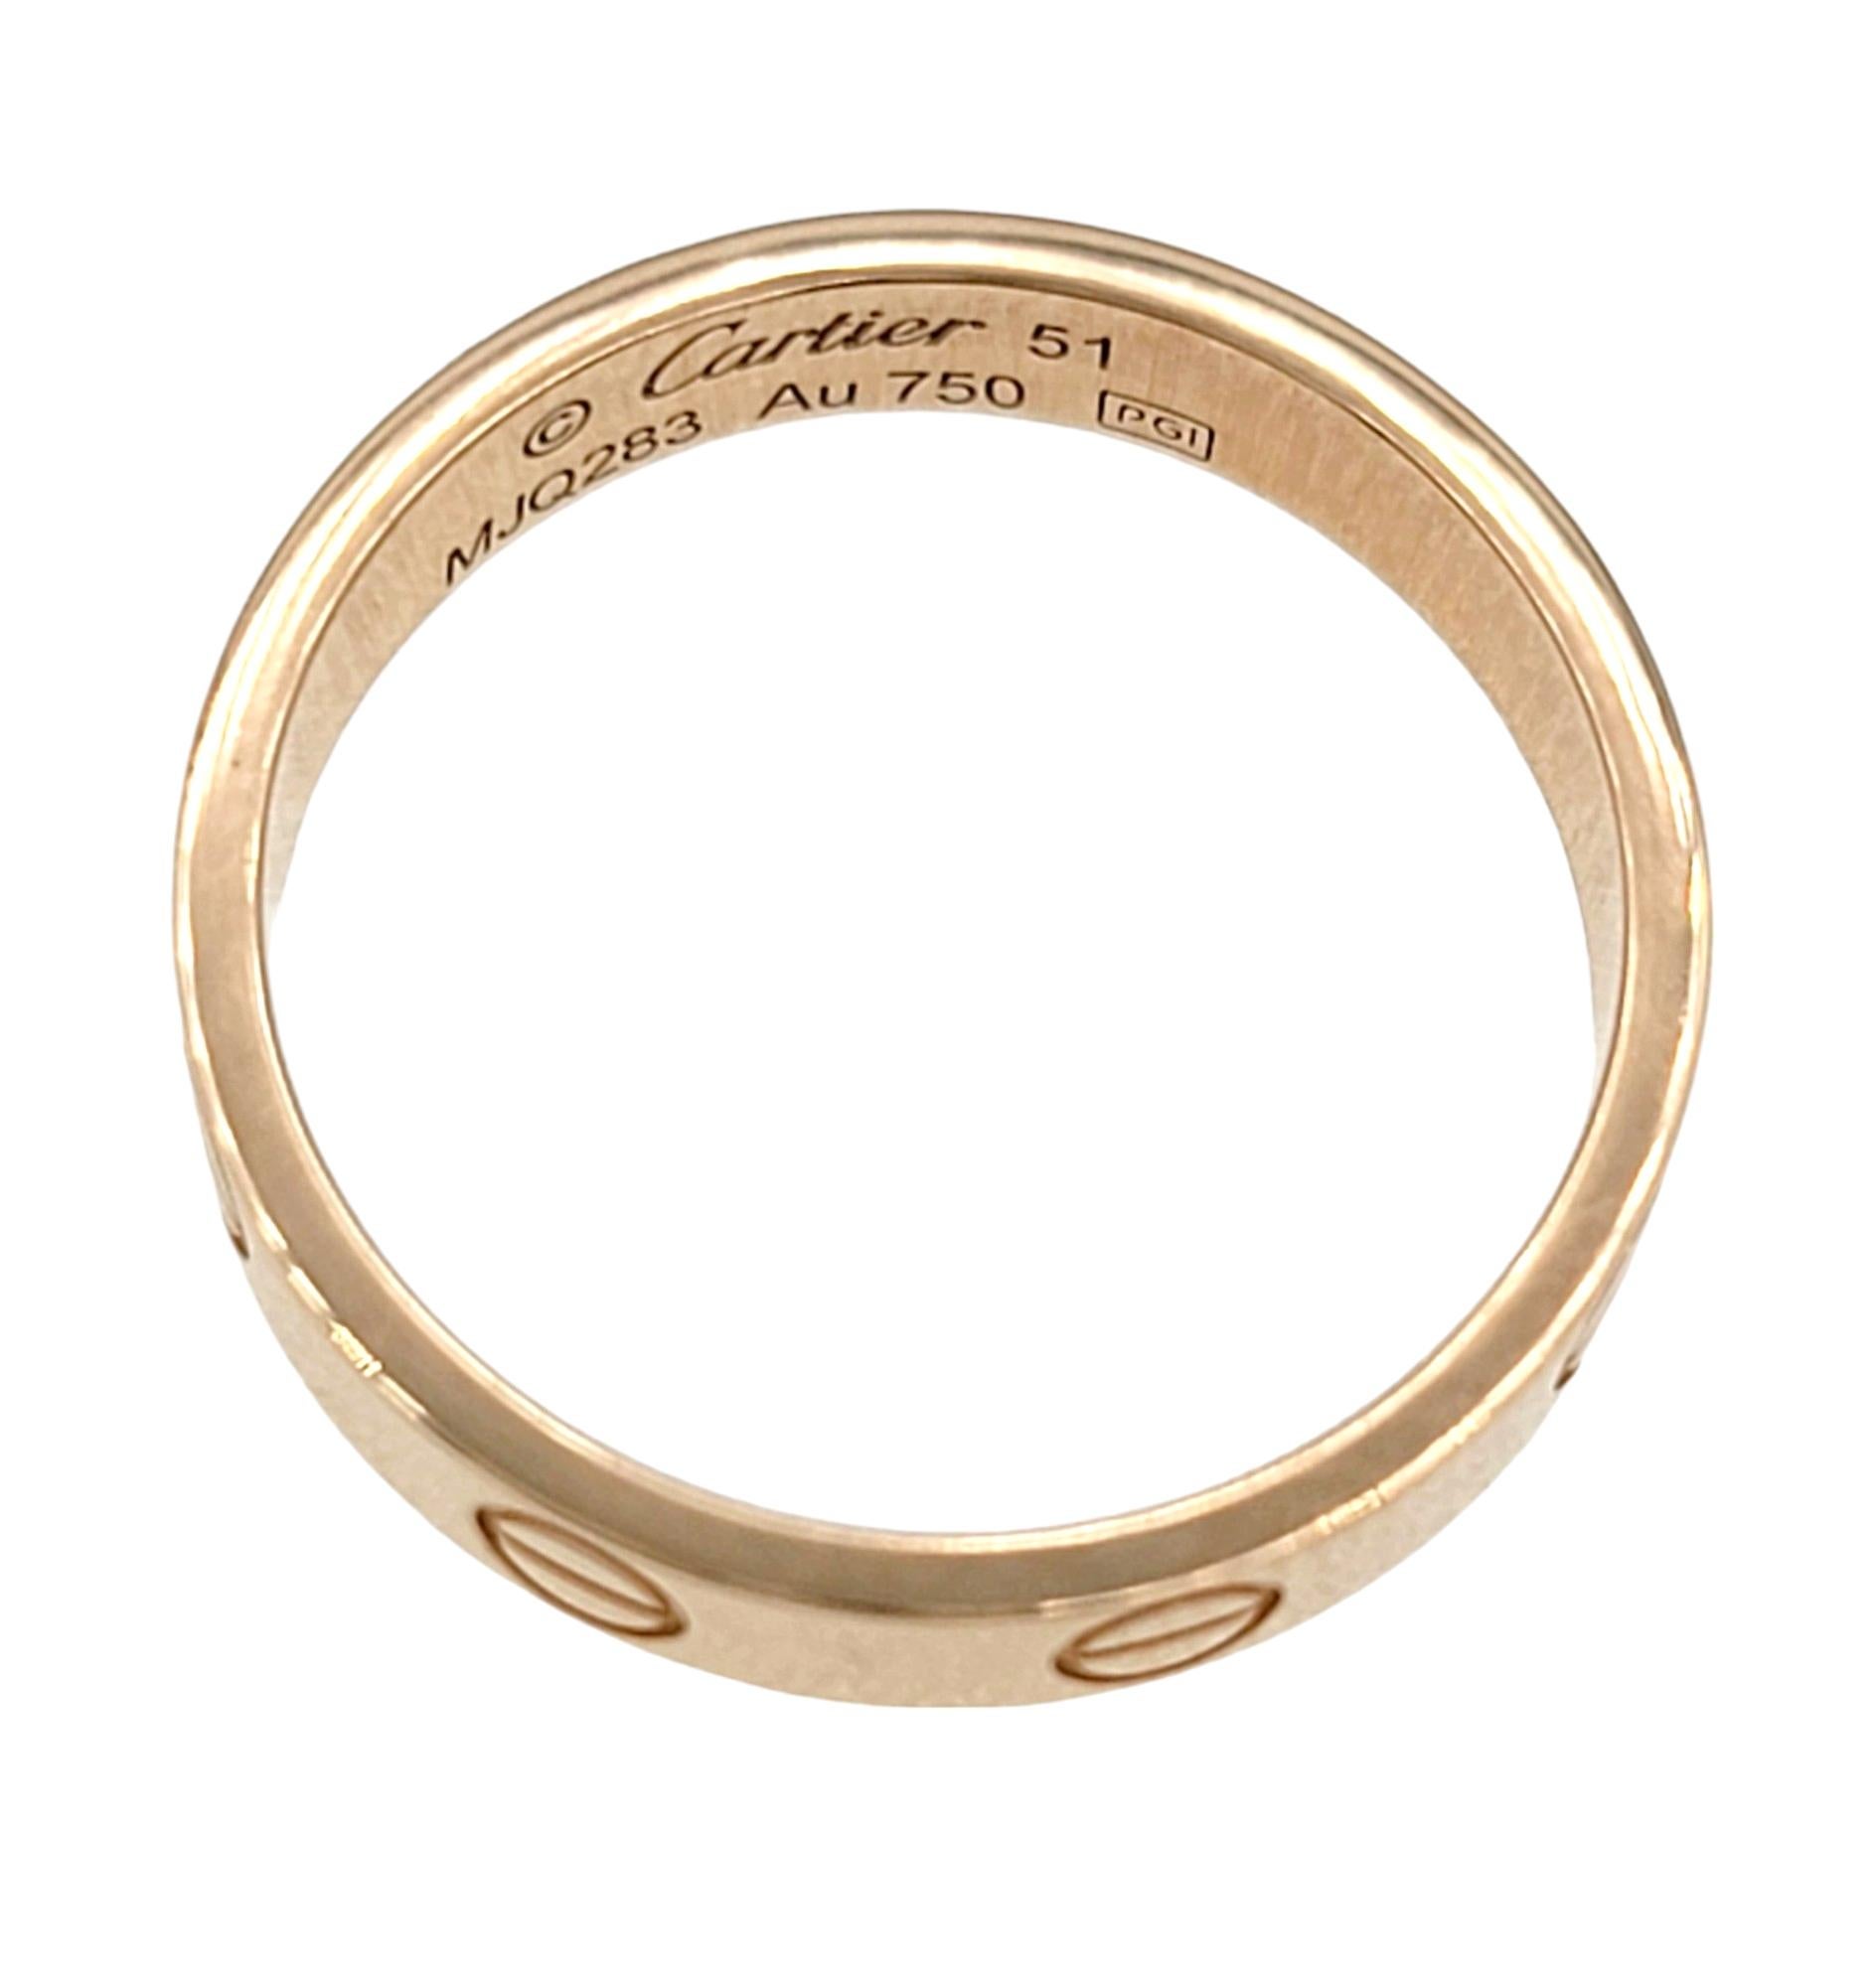 Cartier Größe: 51 / U.S. Ringgröße: 5.75 

Der Cartier Love Band Ring aus 18 Karat Roségold ist ein zeitloses und vielseitiges Schmuckstück, das sich sowohl für legere als auch für formelle Anlässe eignet. Das unverwechselbare Design der